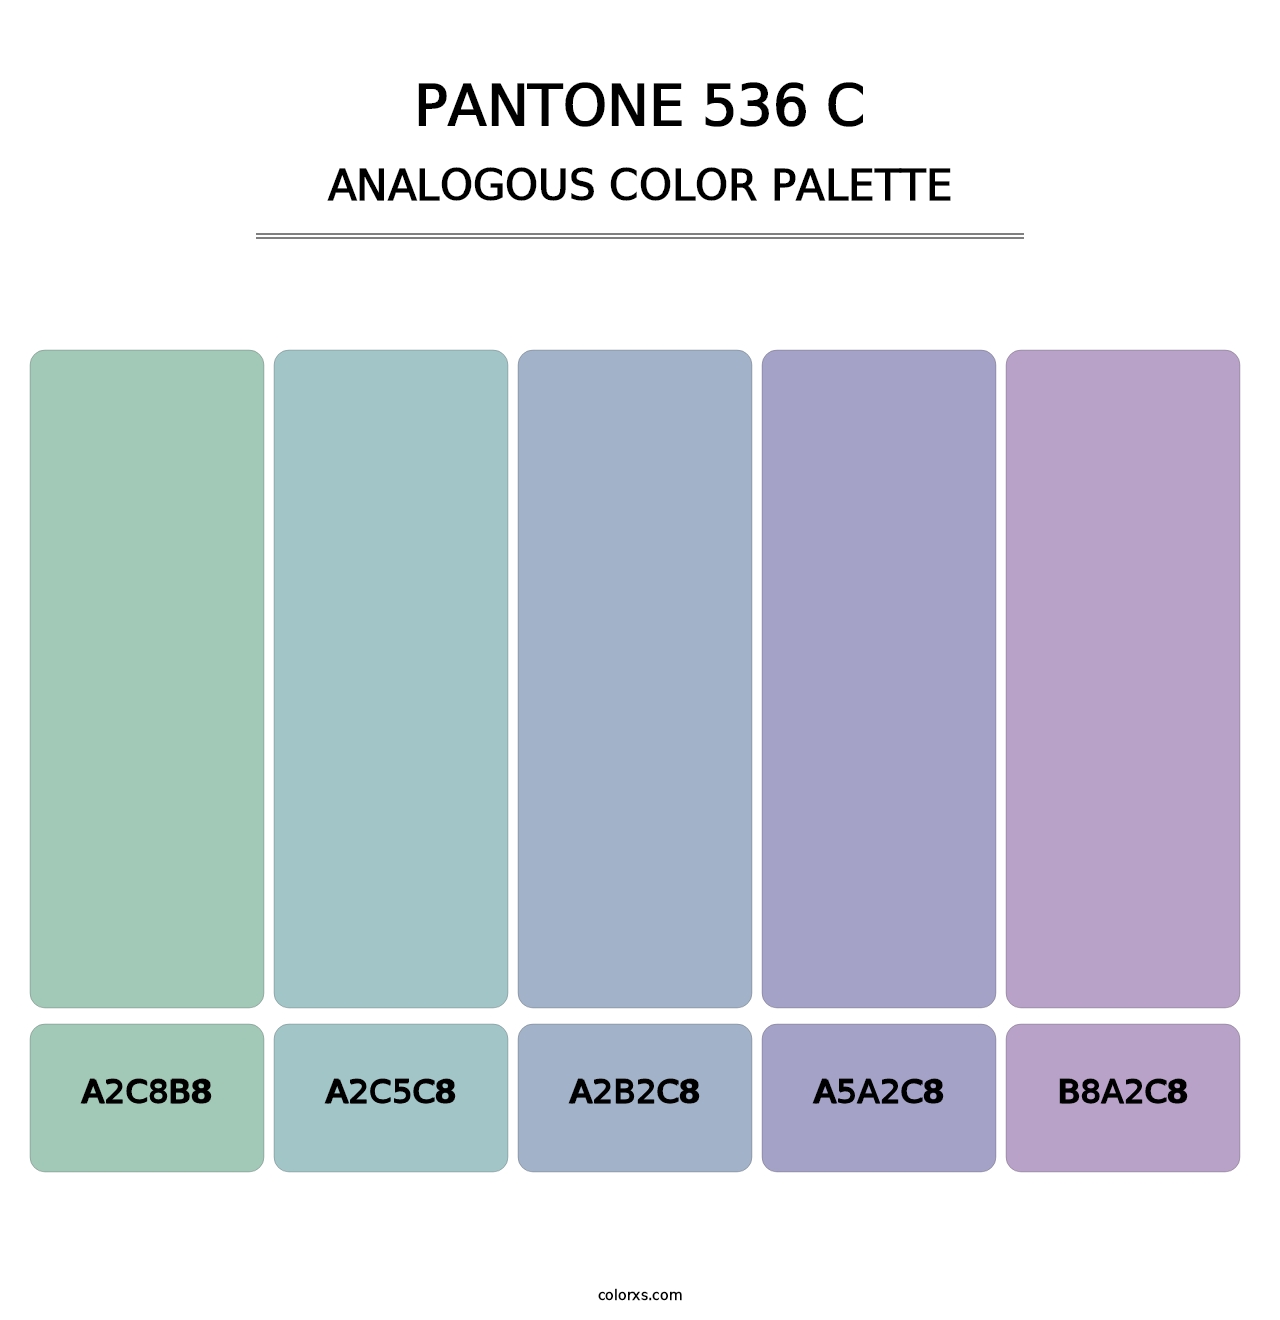 PANTONE 536 C - Analogous Color Palette